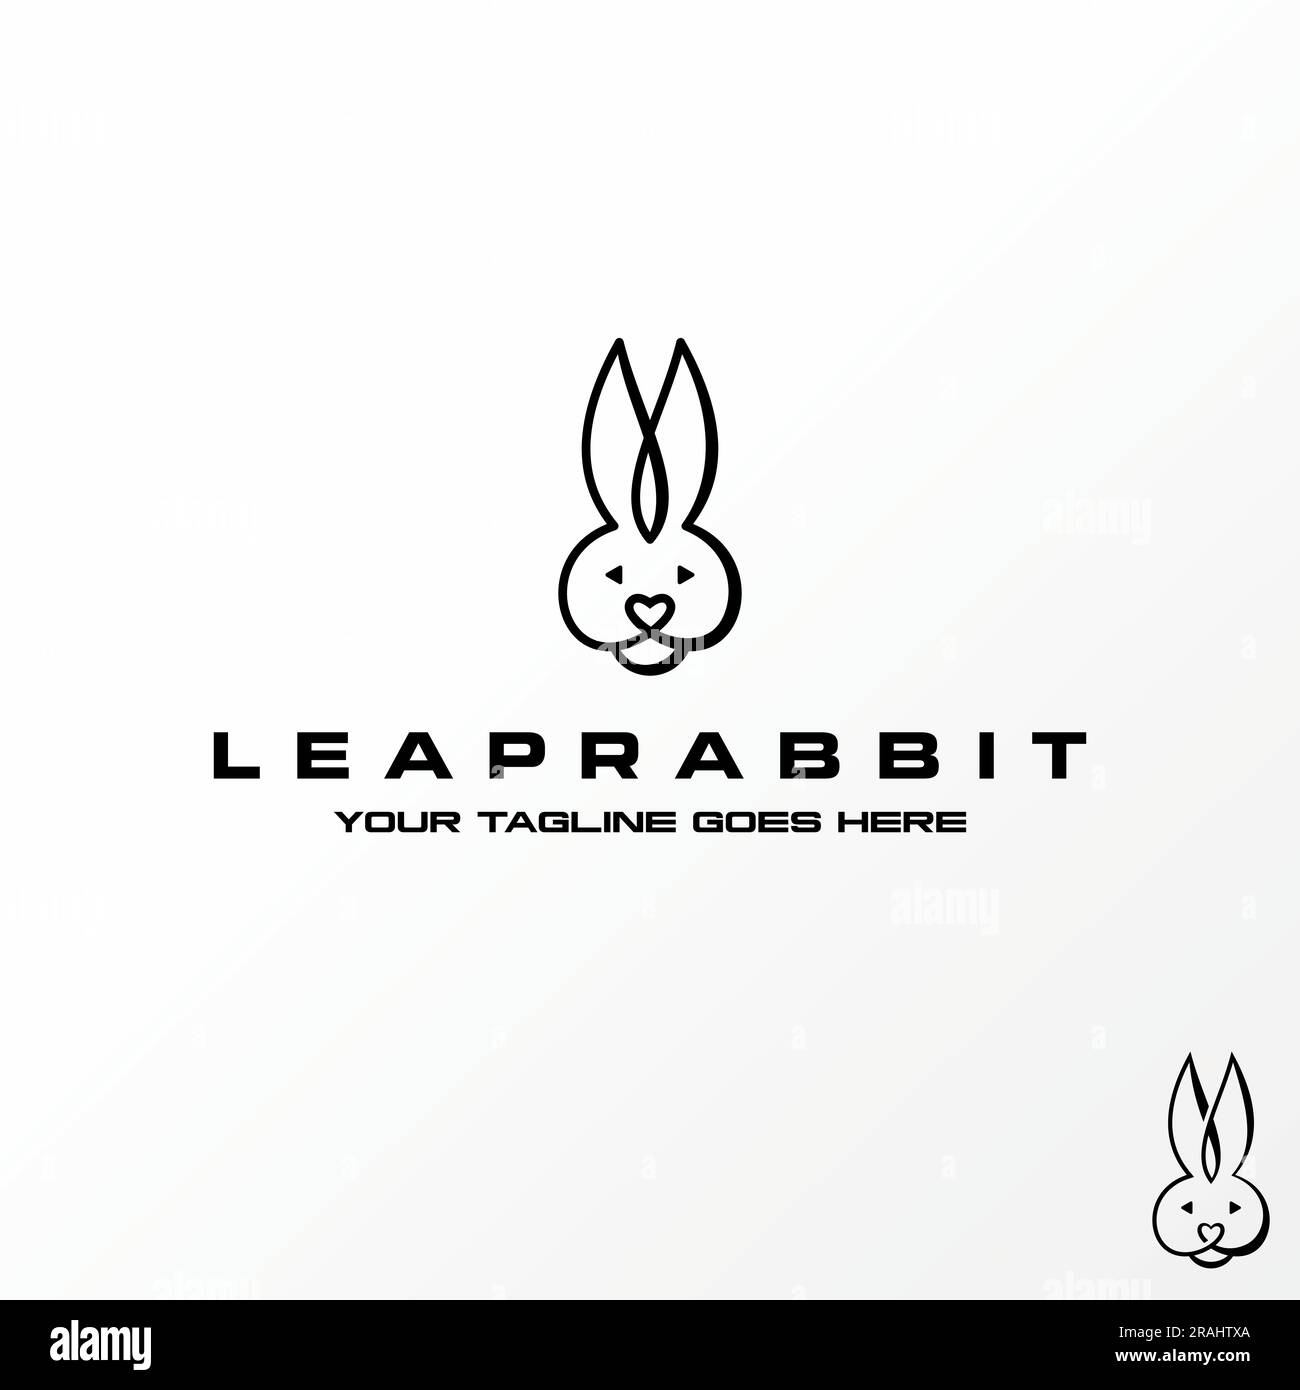 Diseño de logotipo concepto gráfico creativo abstracto premium libre vector stock cabeza y orejas conejo divertido en línea arte. Relacionado con animales activos y dibujos animados Ilustración del Vector